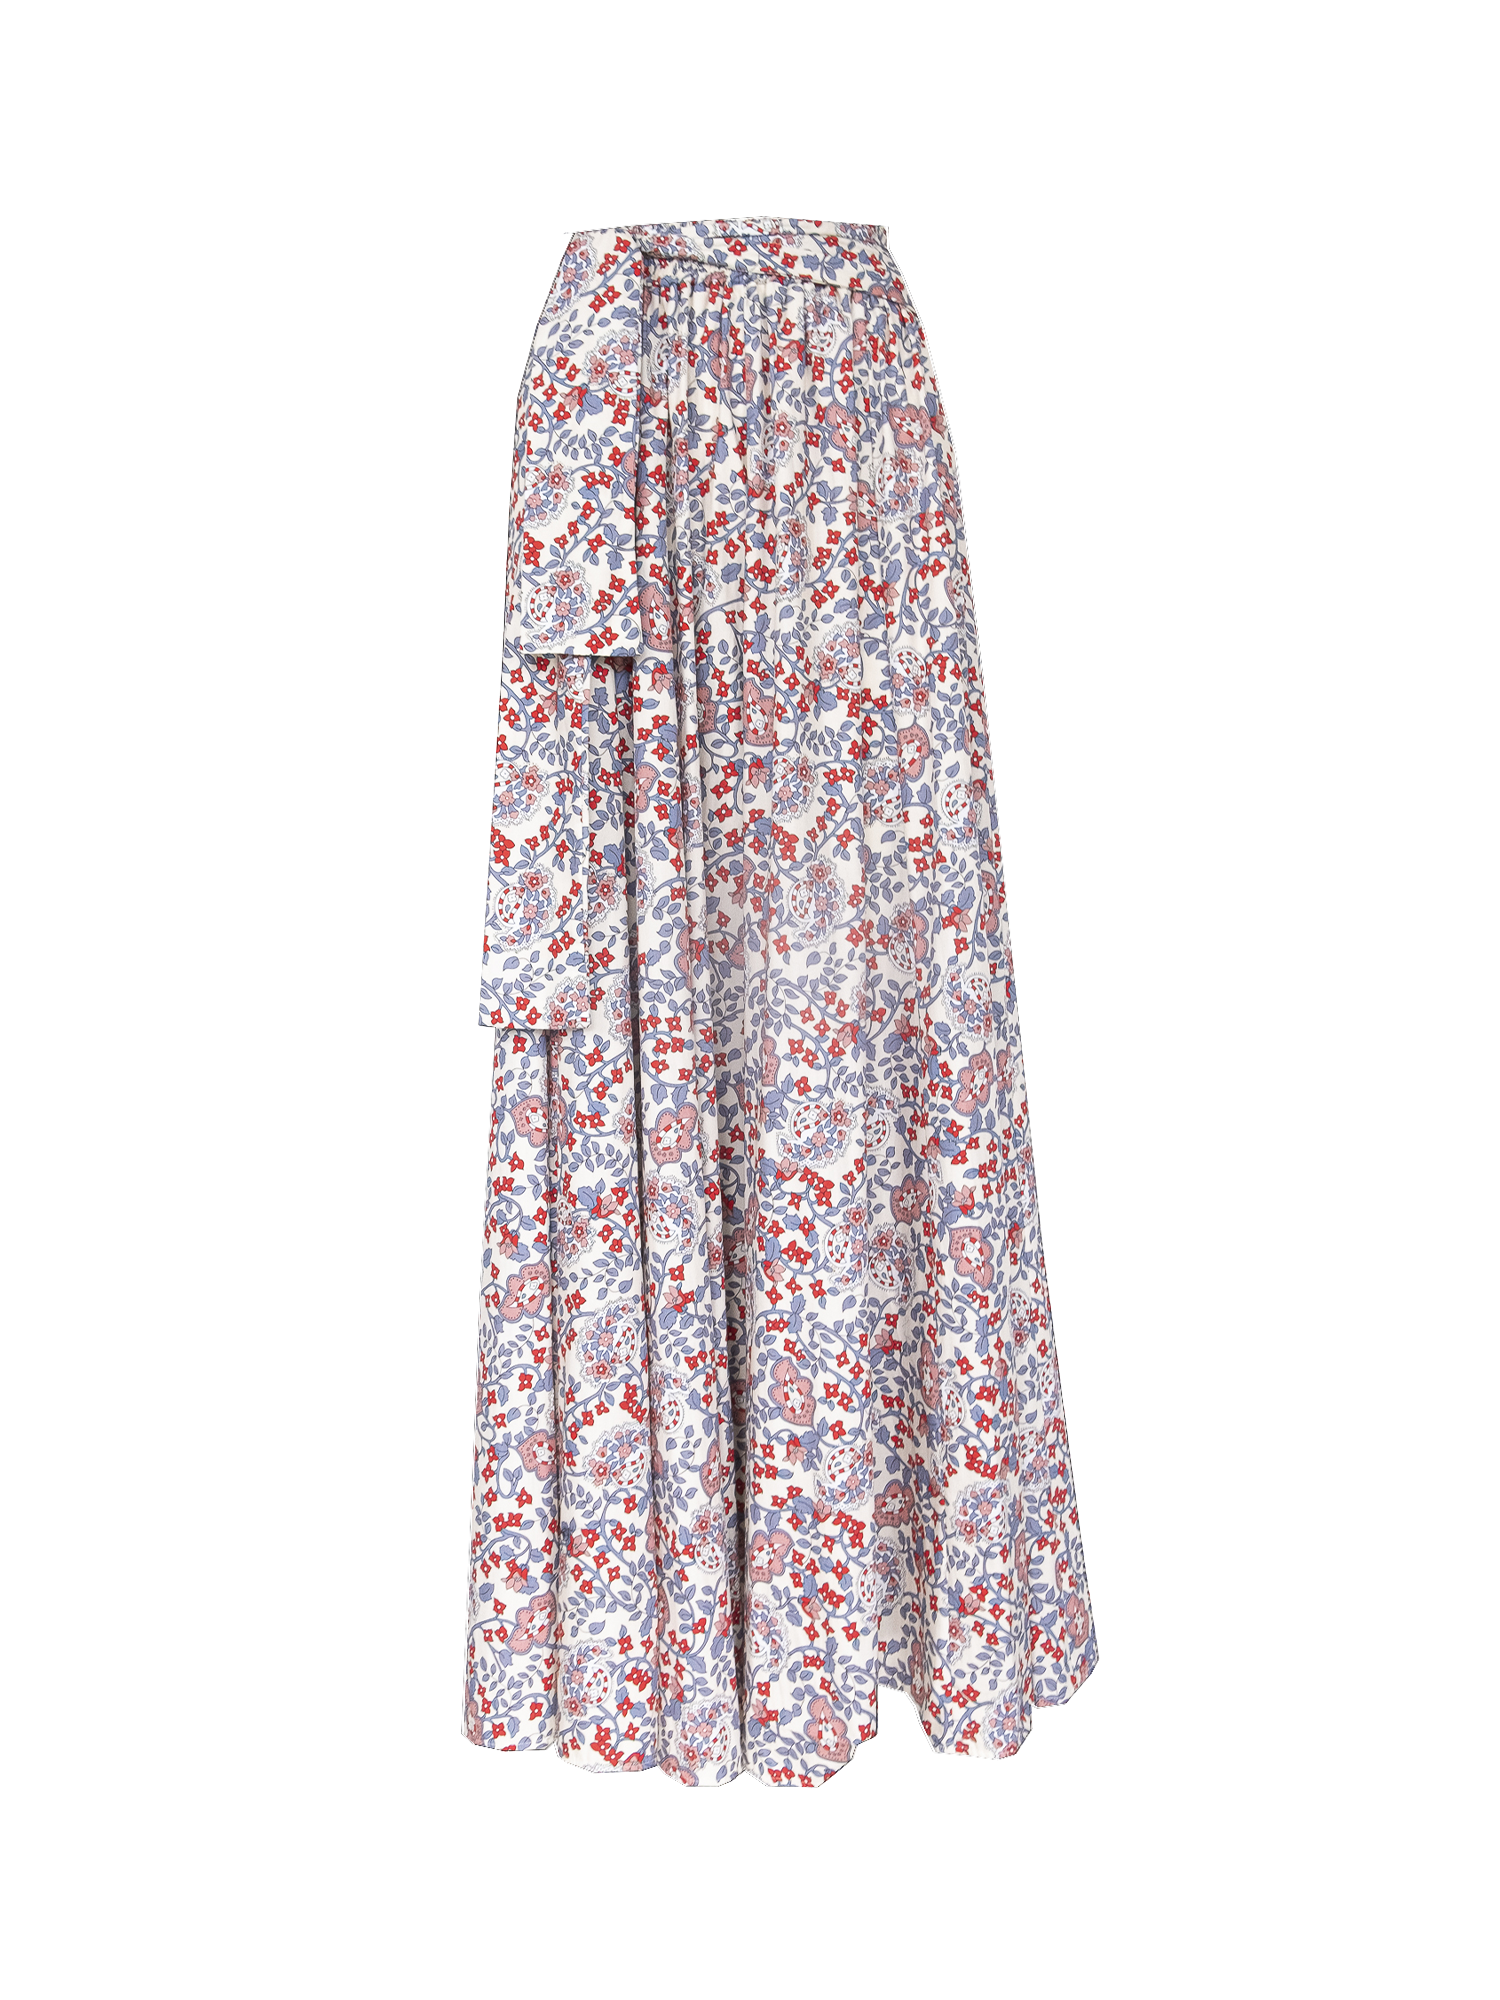 FIORDALISA - long cotton skirt in Kew pattern